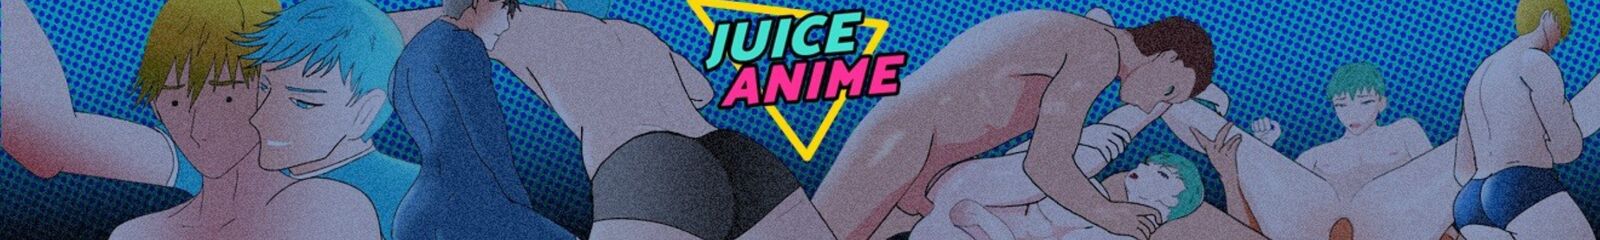 Juice Anime